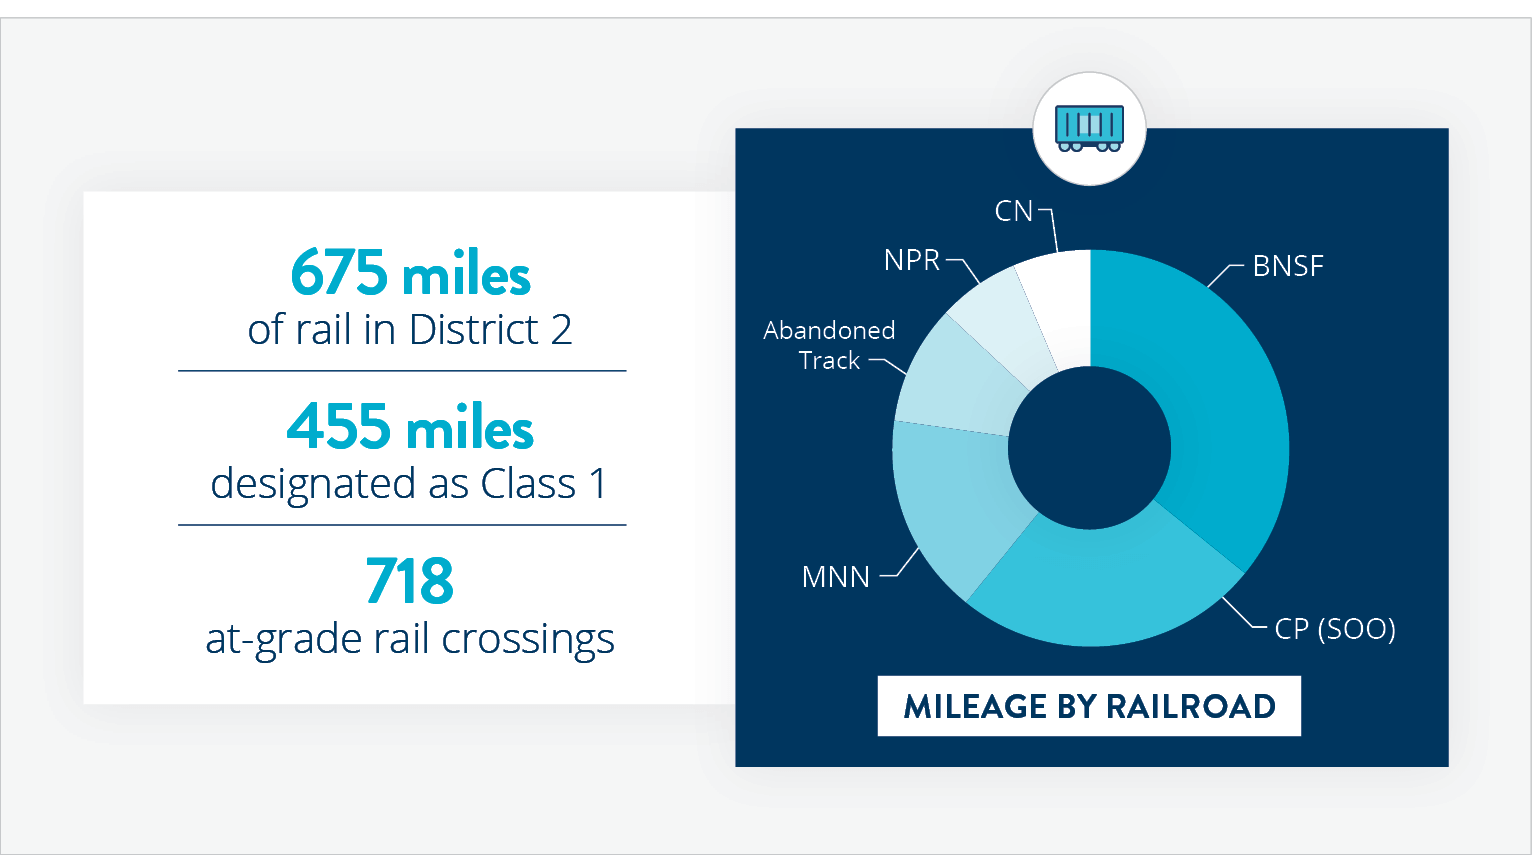 High-level statistics about railroads in D2